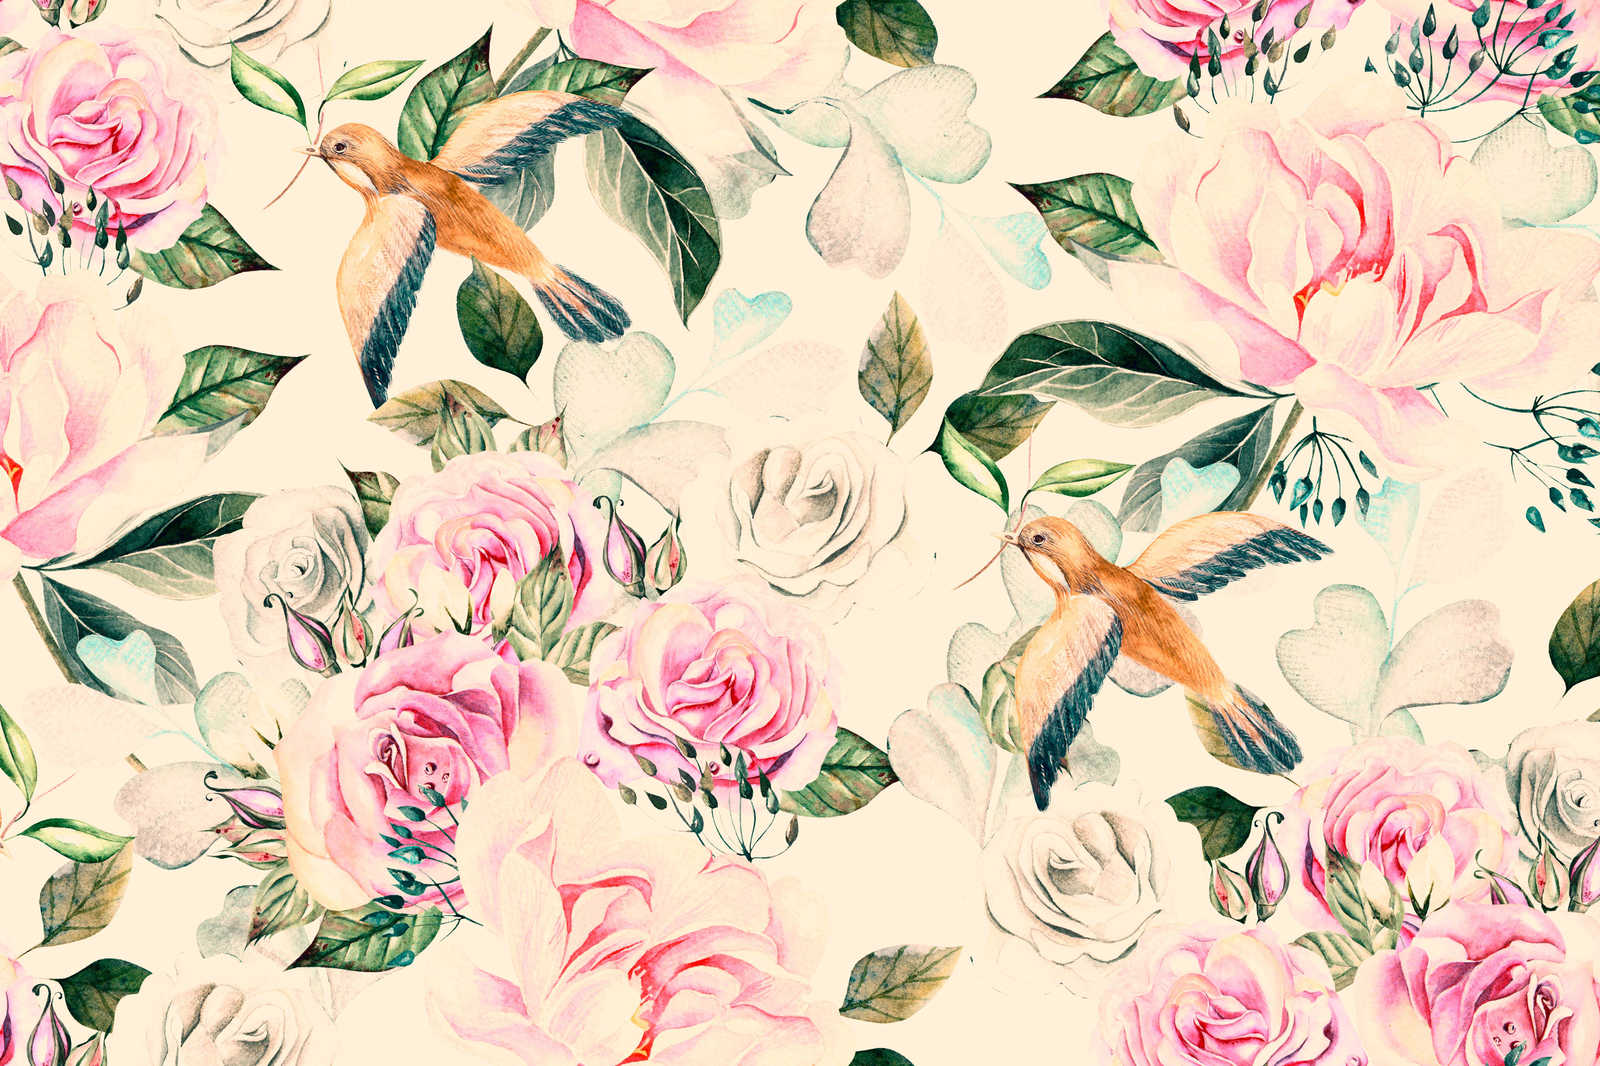             Leinwand mit verspielten Blumen und Vögel im Vintage-Stil – 0,90 m x 0,60 m
        